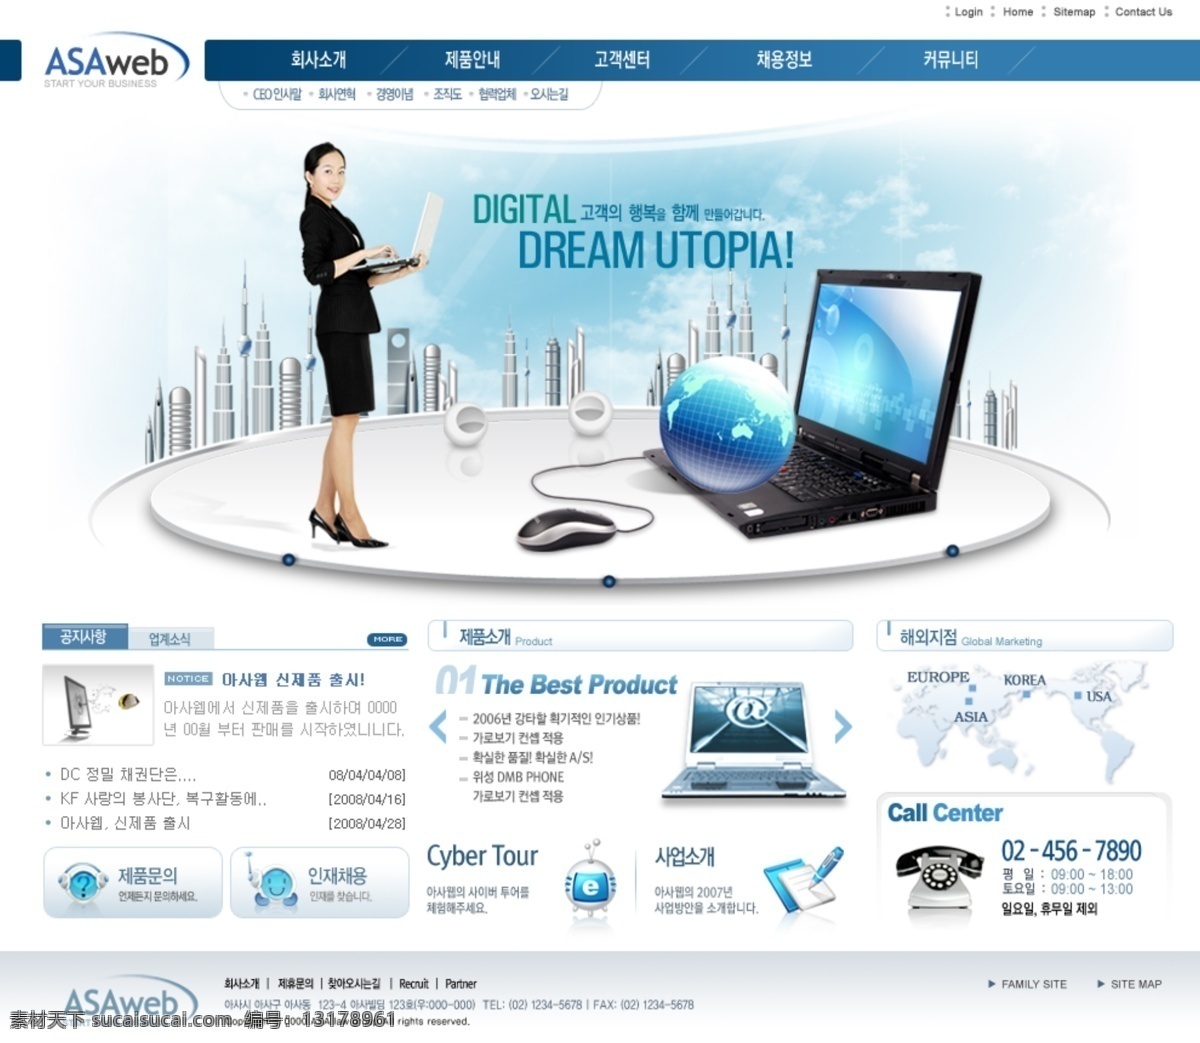 ui设计 办公设备 笔记本 公司网站 韩国女人 韩国网页 韩国网站 界面设计 网页 网页版式 职业人物 网页模板 网页设计 网页设计模板 网页素材